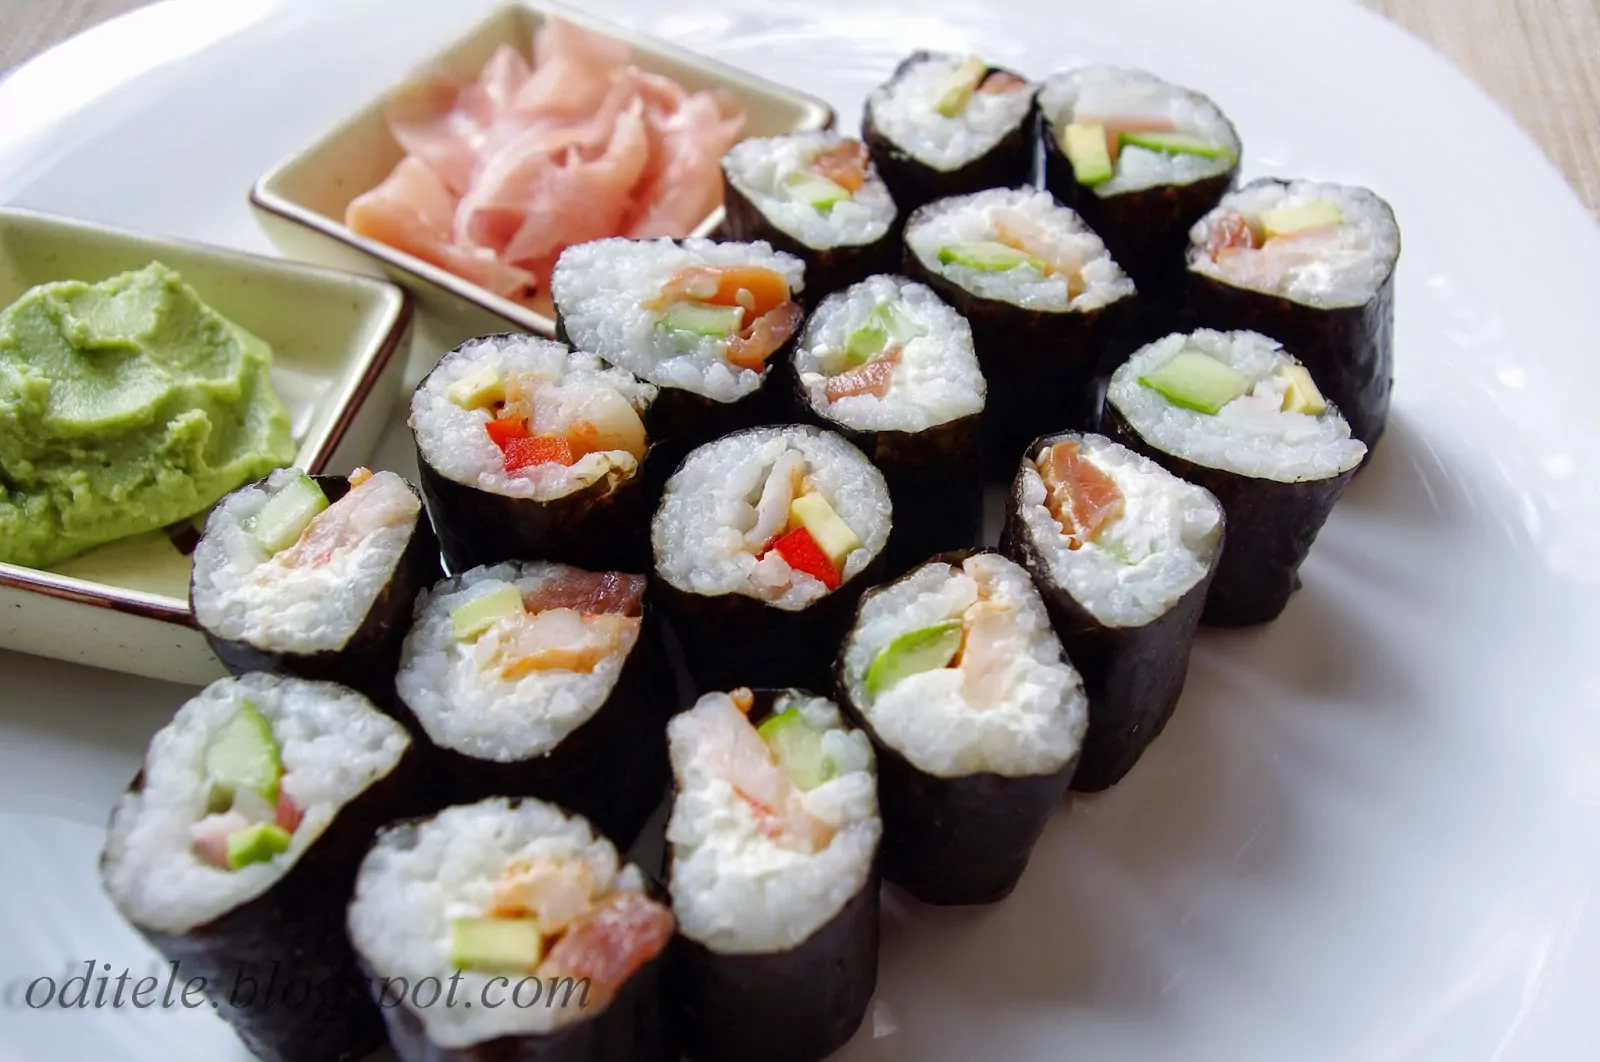 Naminiai sušiai - sushi | Receptas